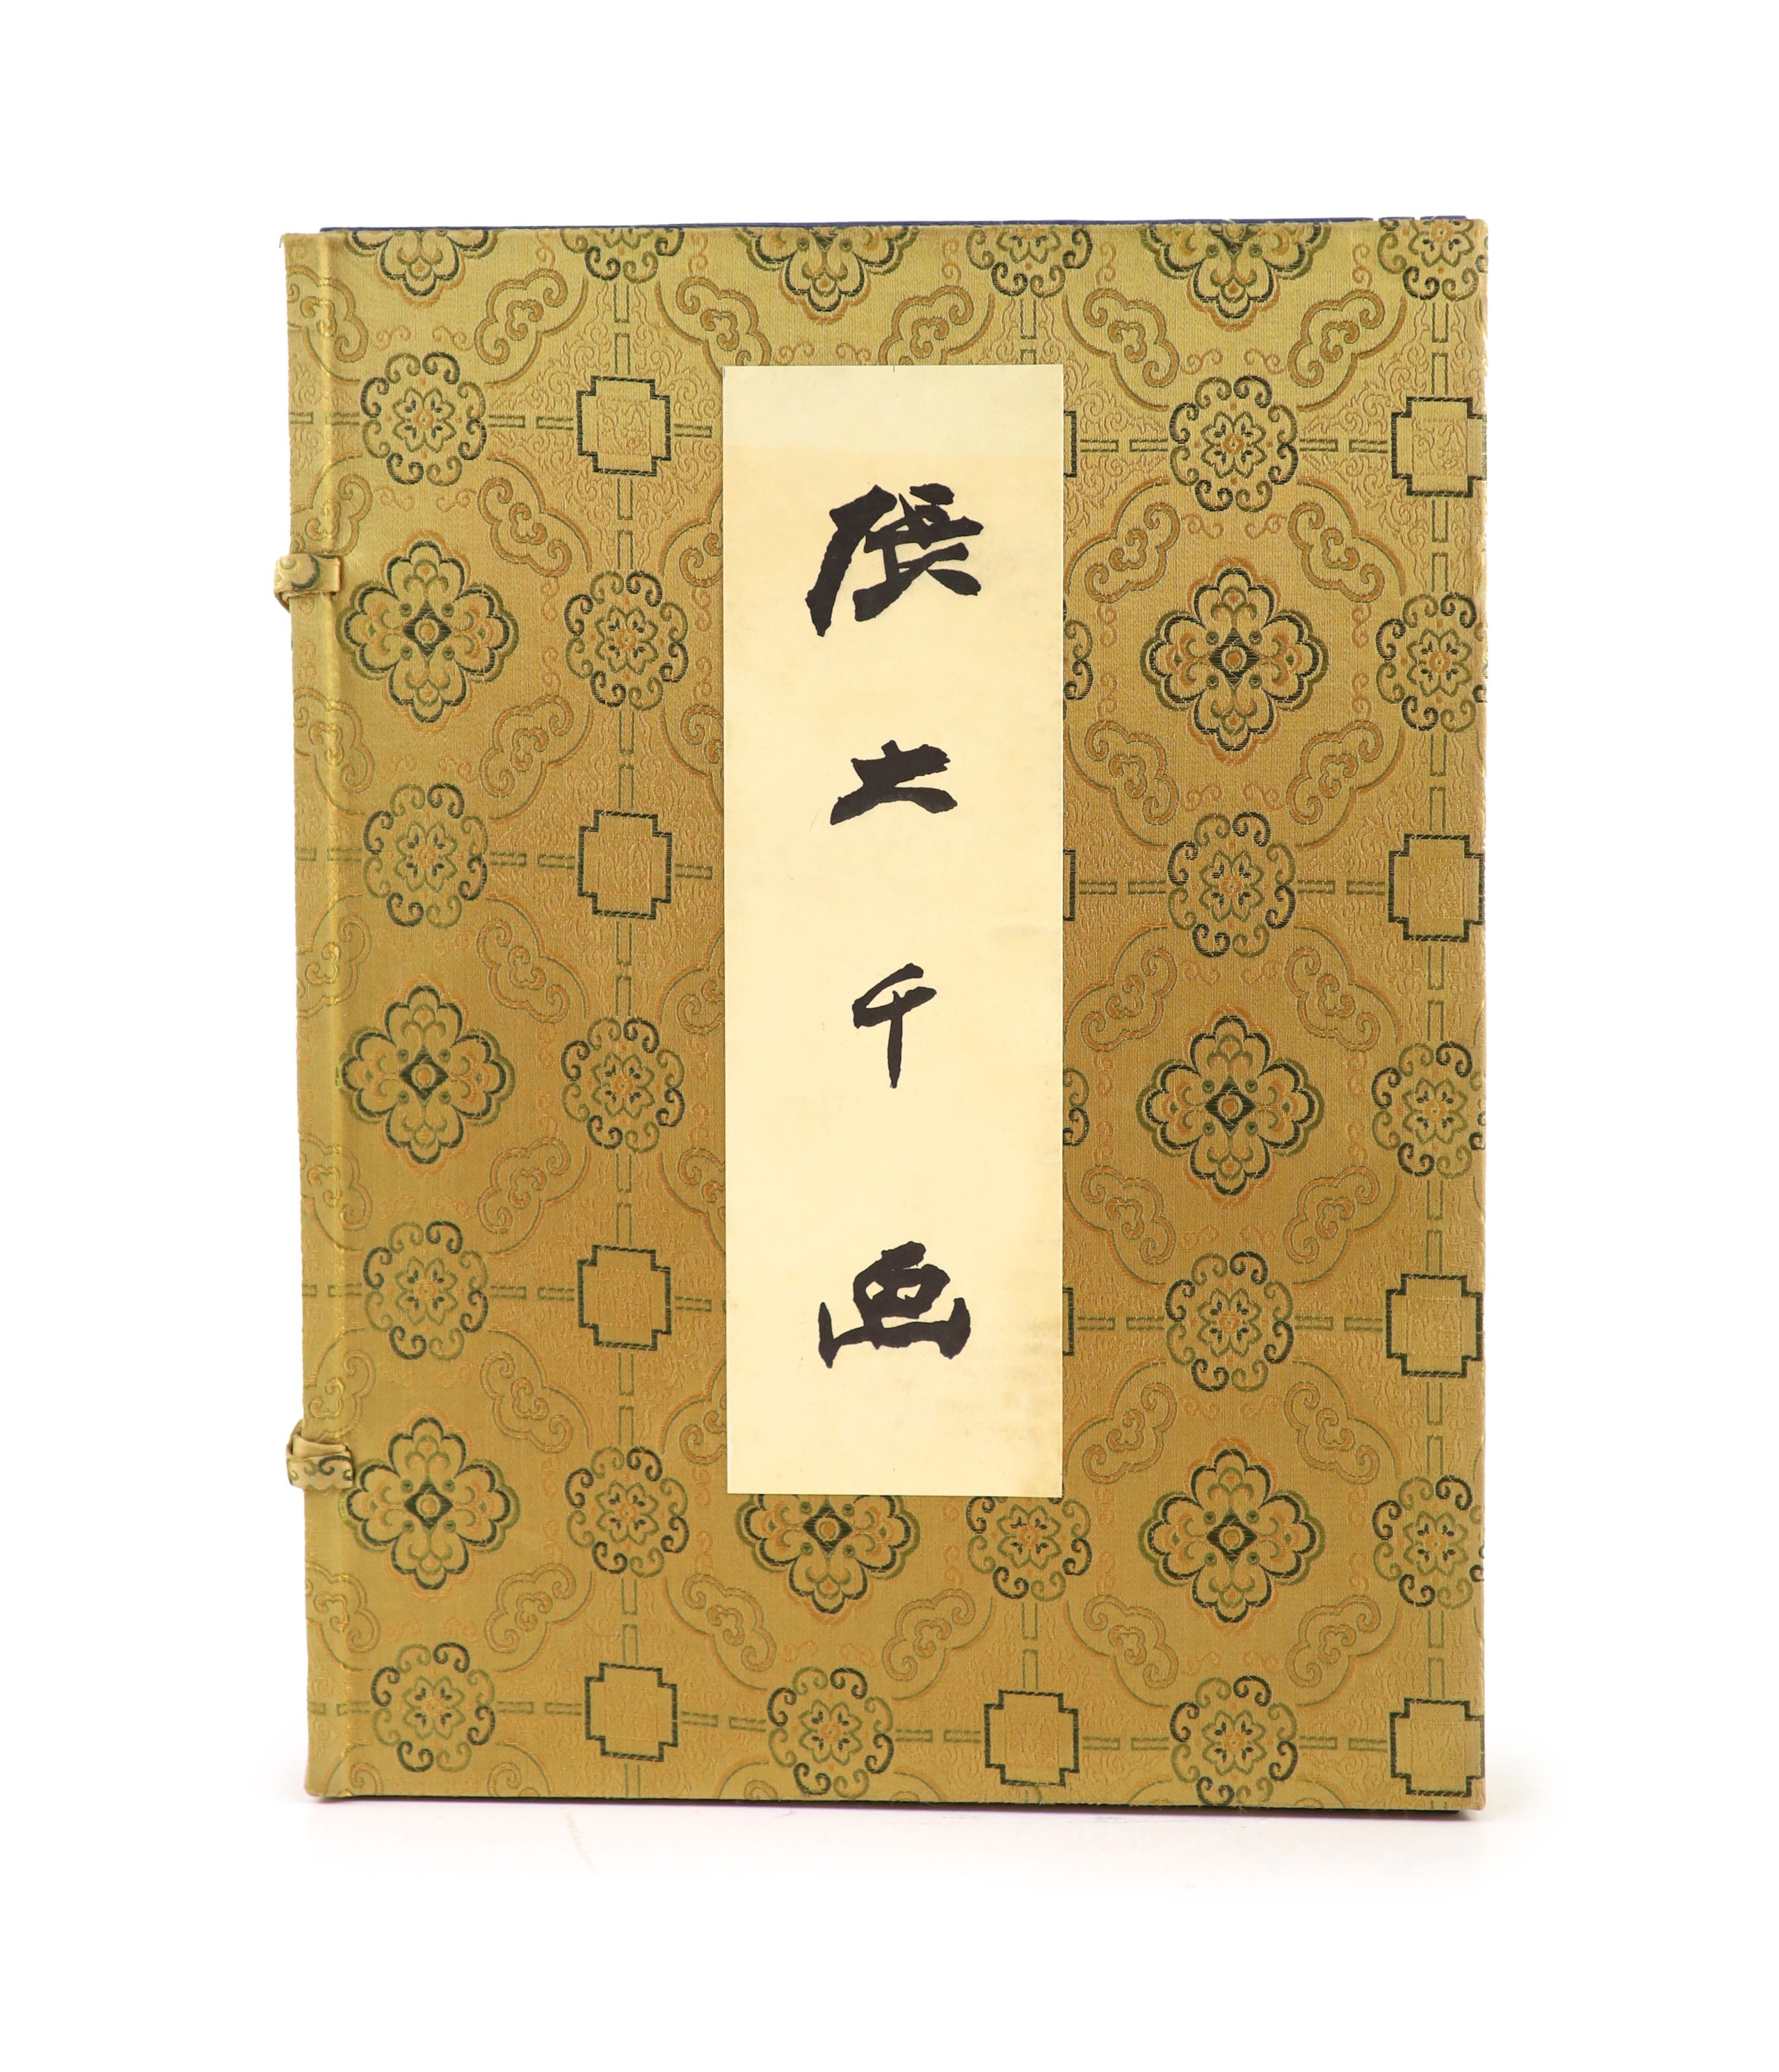 Da-Chien (Professor Chang), 'Chinese Painting', Yee Tin Tong Printing Press Ltd, Hong Kong, 1961, gold brocade case